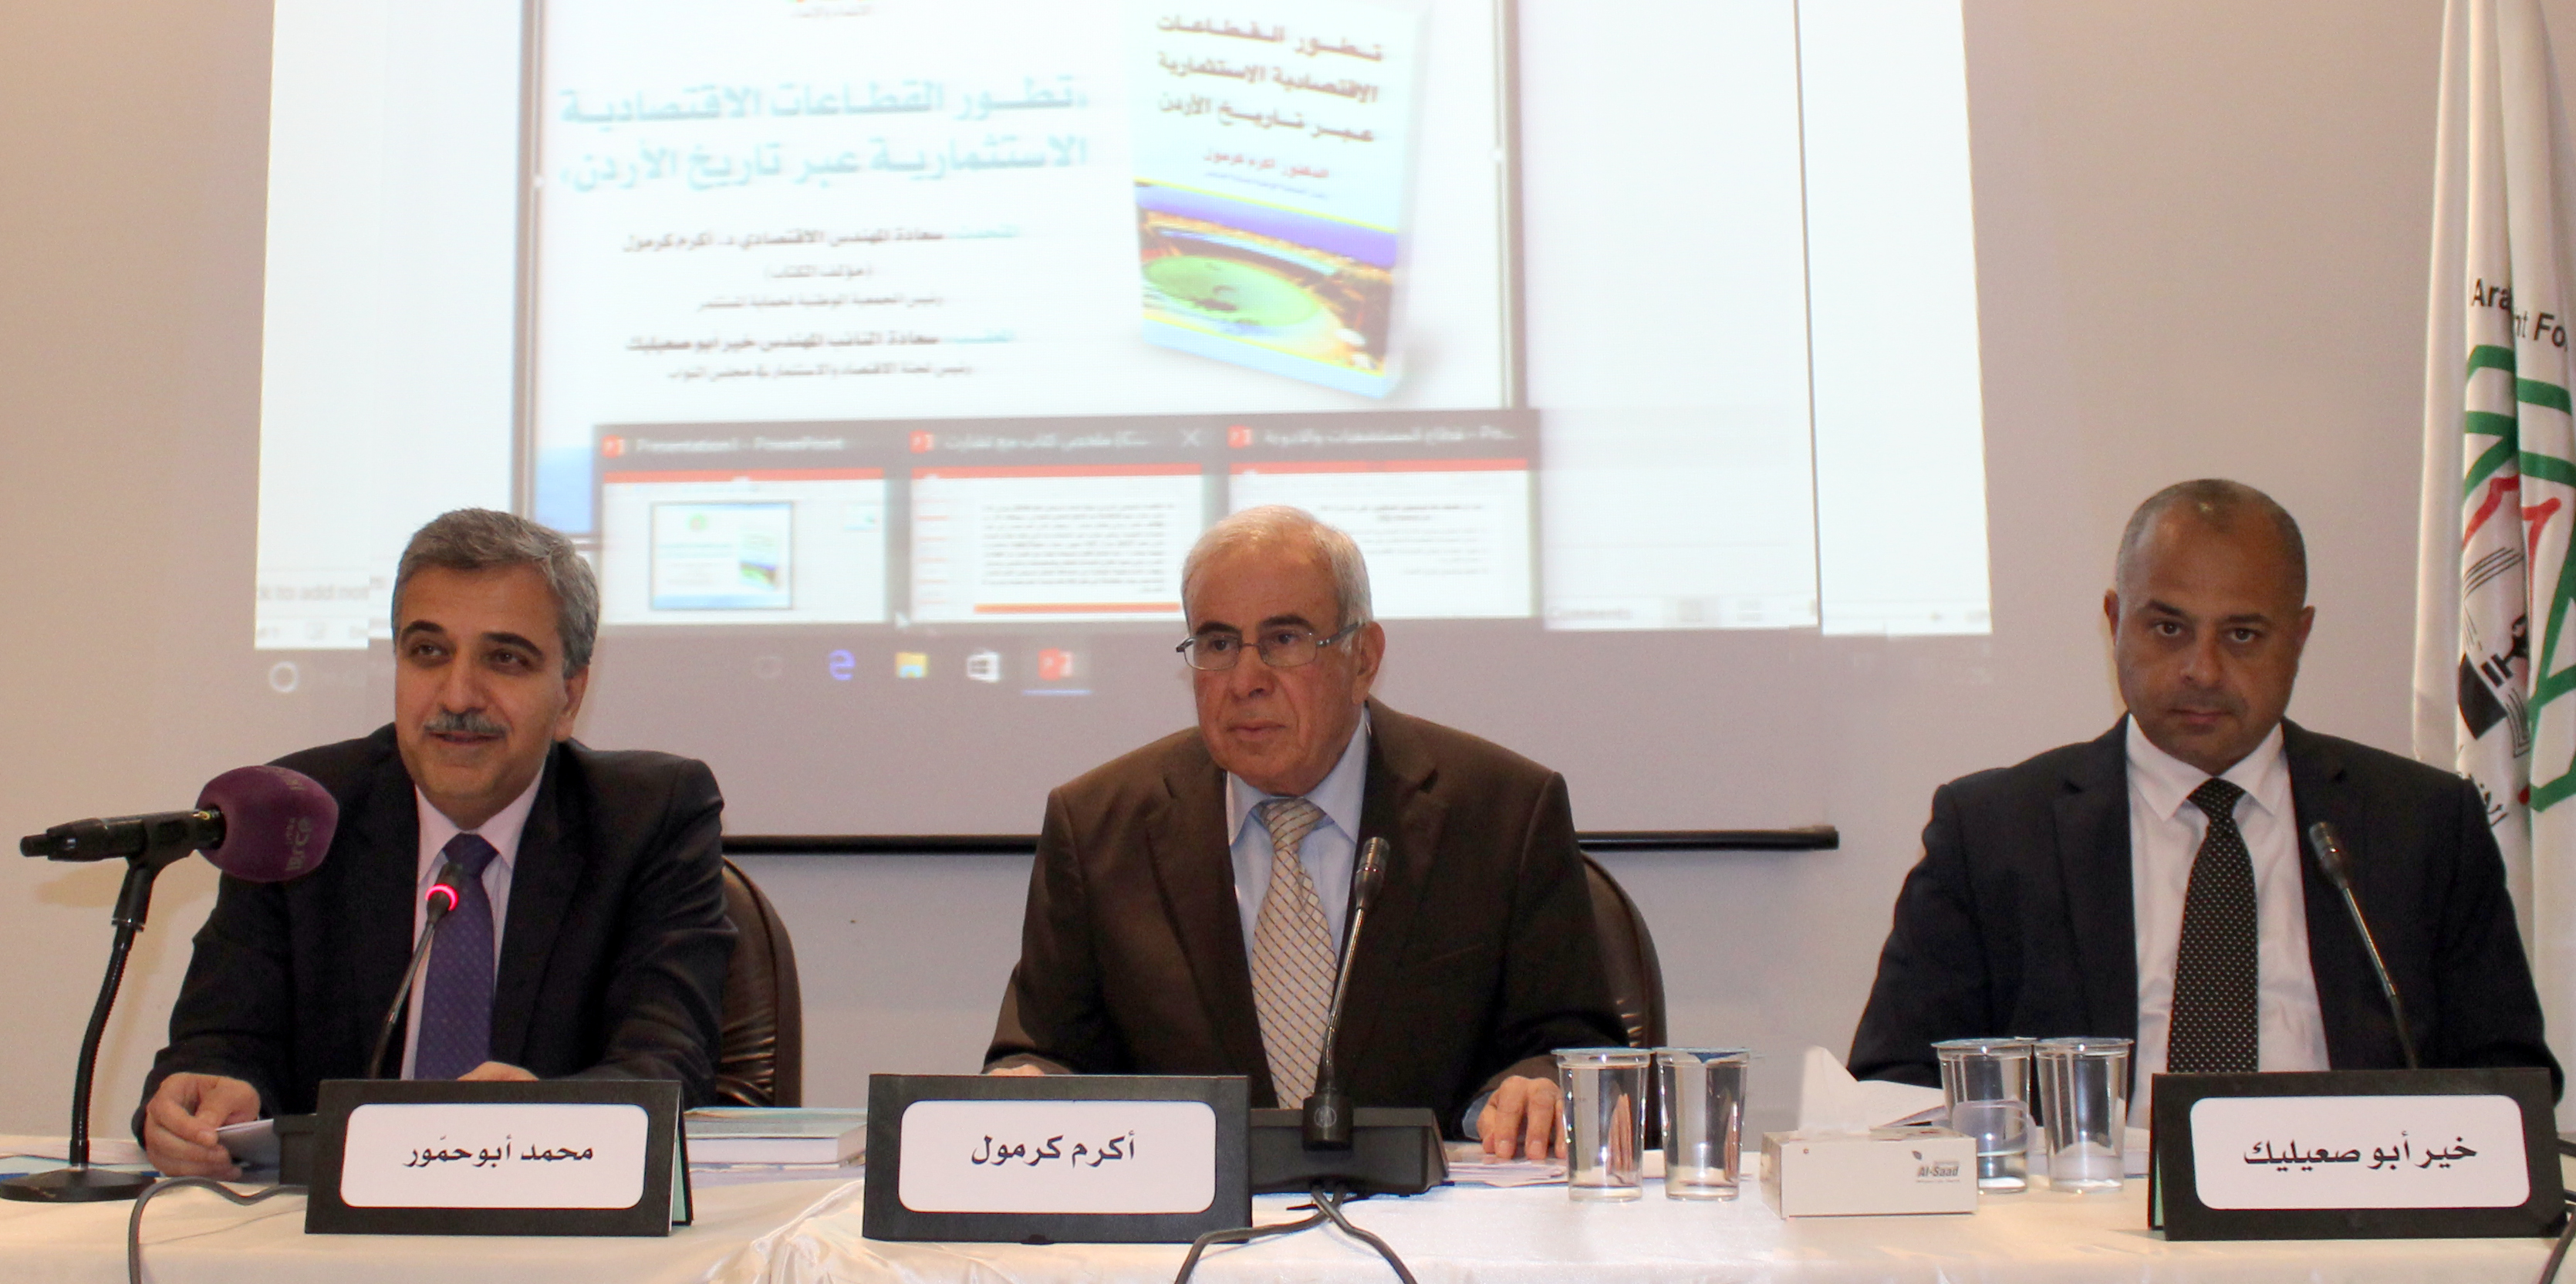 د. أبوحمور: عدم استقرار الظروف الإقليمية والحديث عن الفساد يؤثران سلباً على التدفقات الاستثمارية